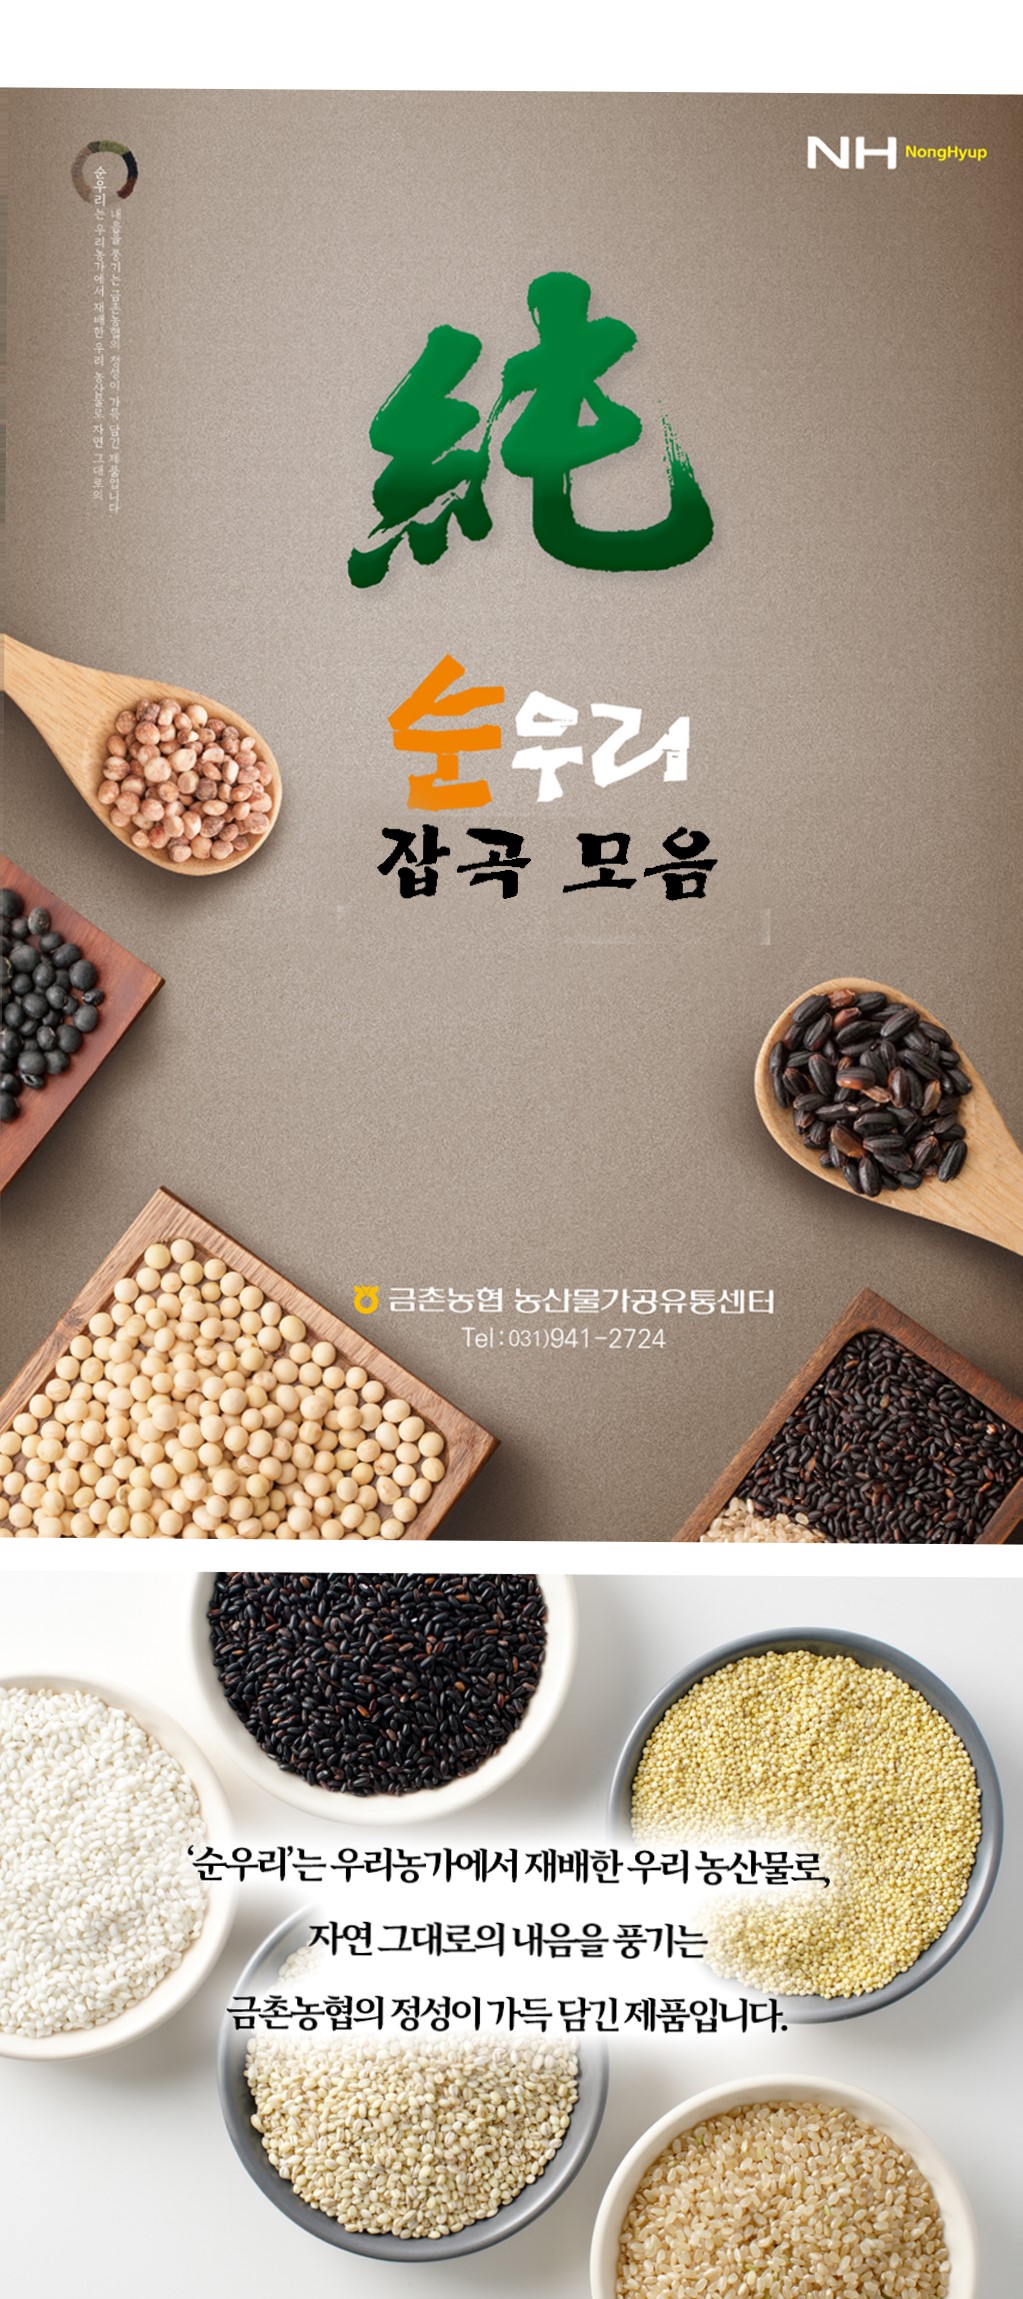 韓國食品-[금촌농협] 순우리 찹쌀 1kg